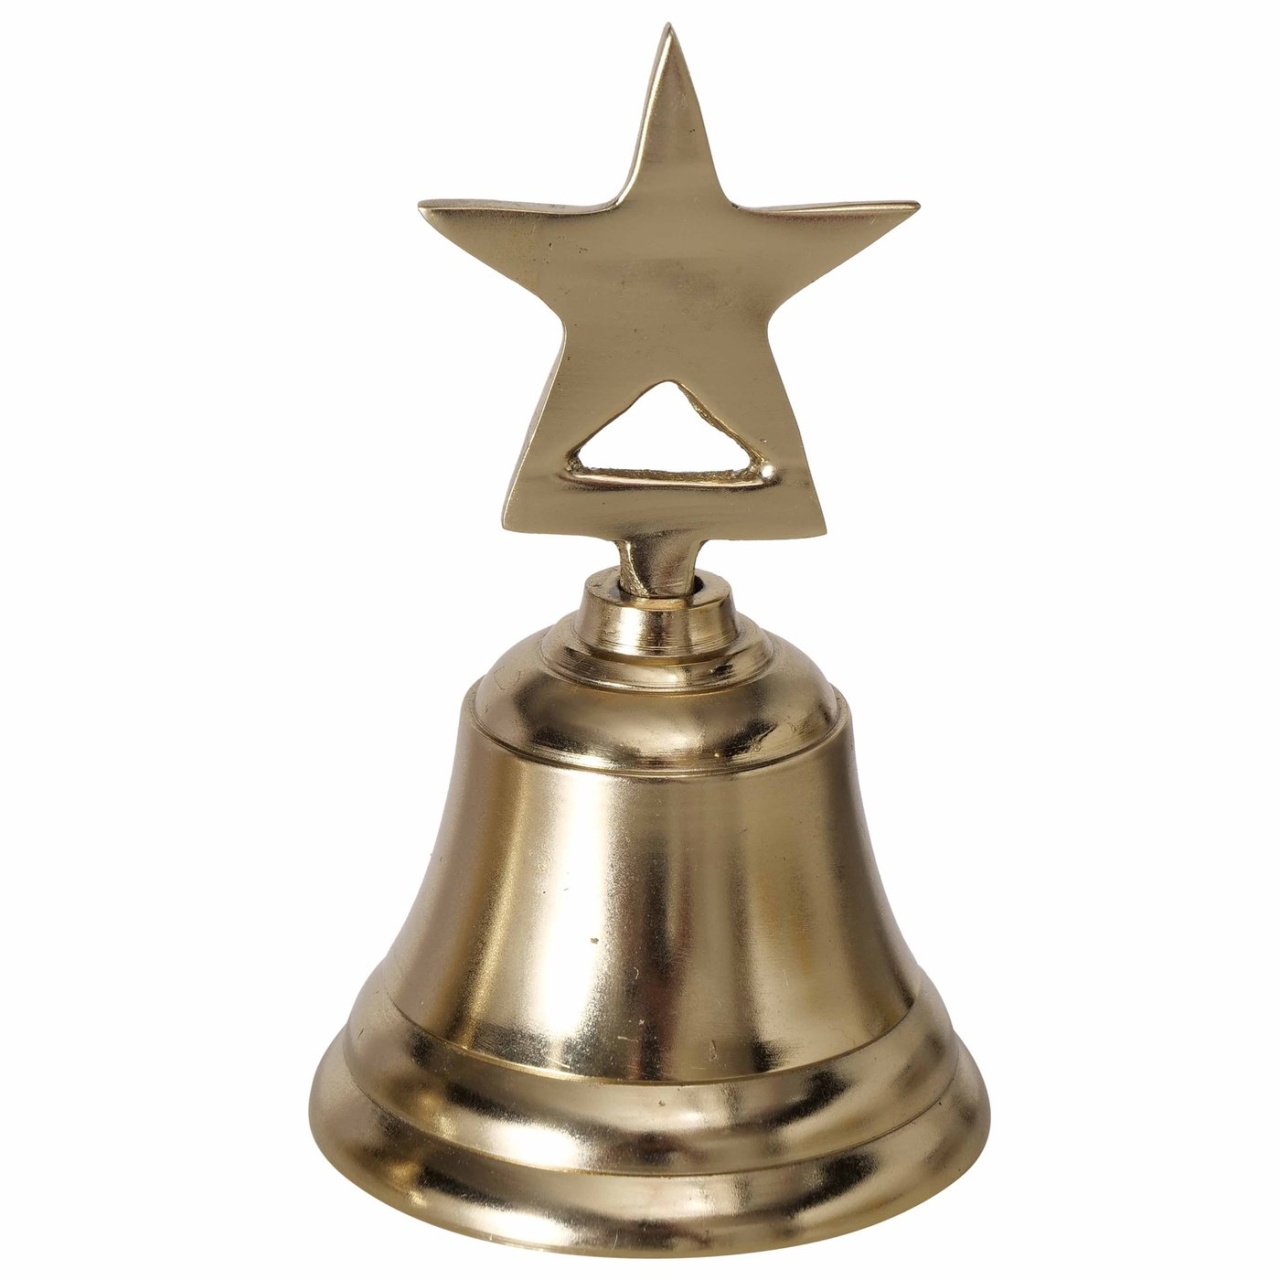 Weihnachtsglocke Glocke aus Metall mit Stern glatt golden